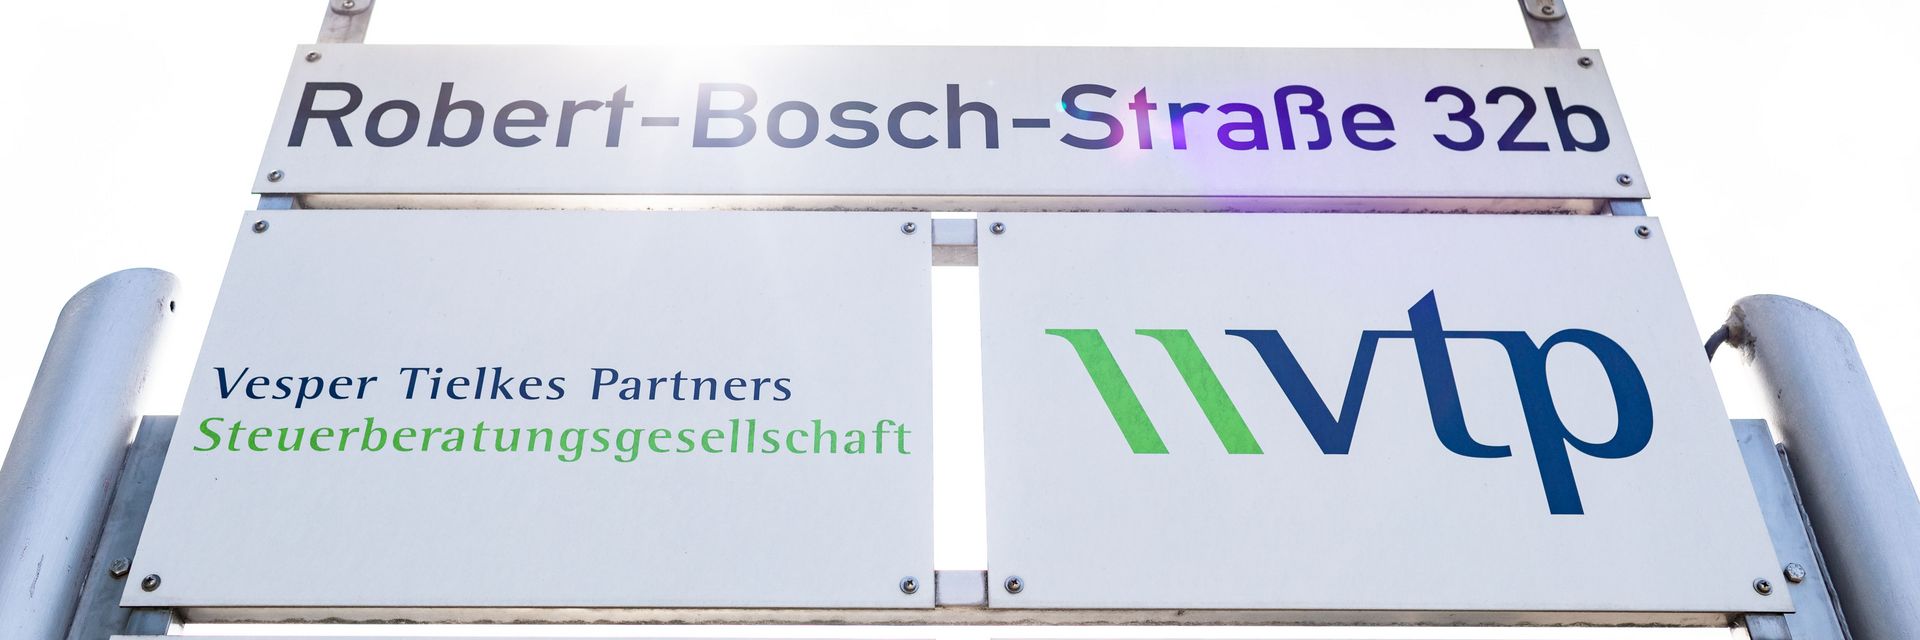 VTPartners in der Robert-Bosch-Straße 32b in Bensheim